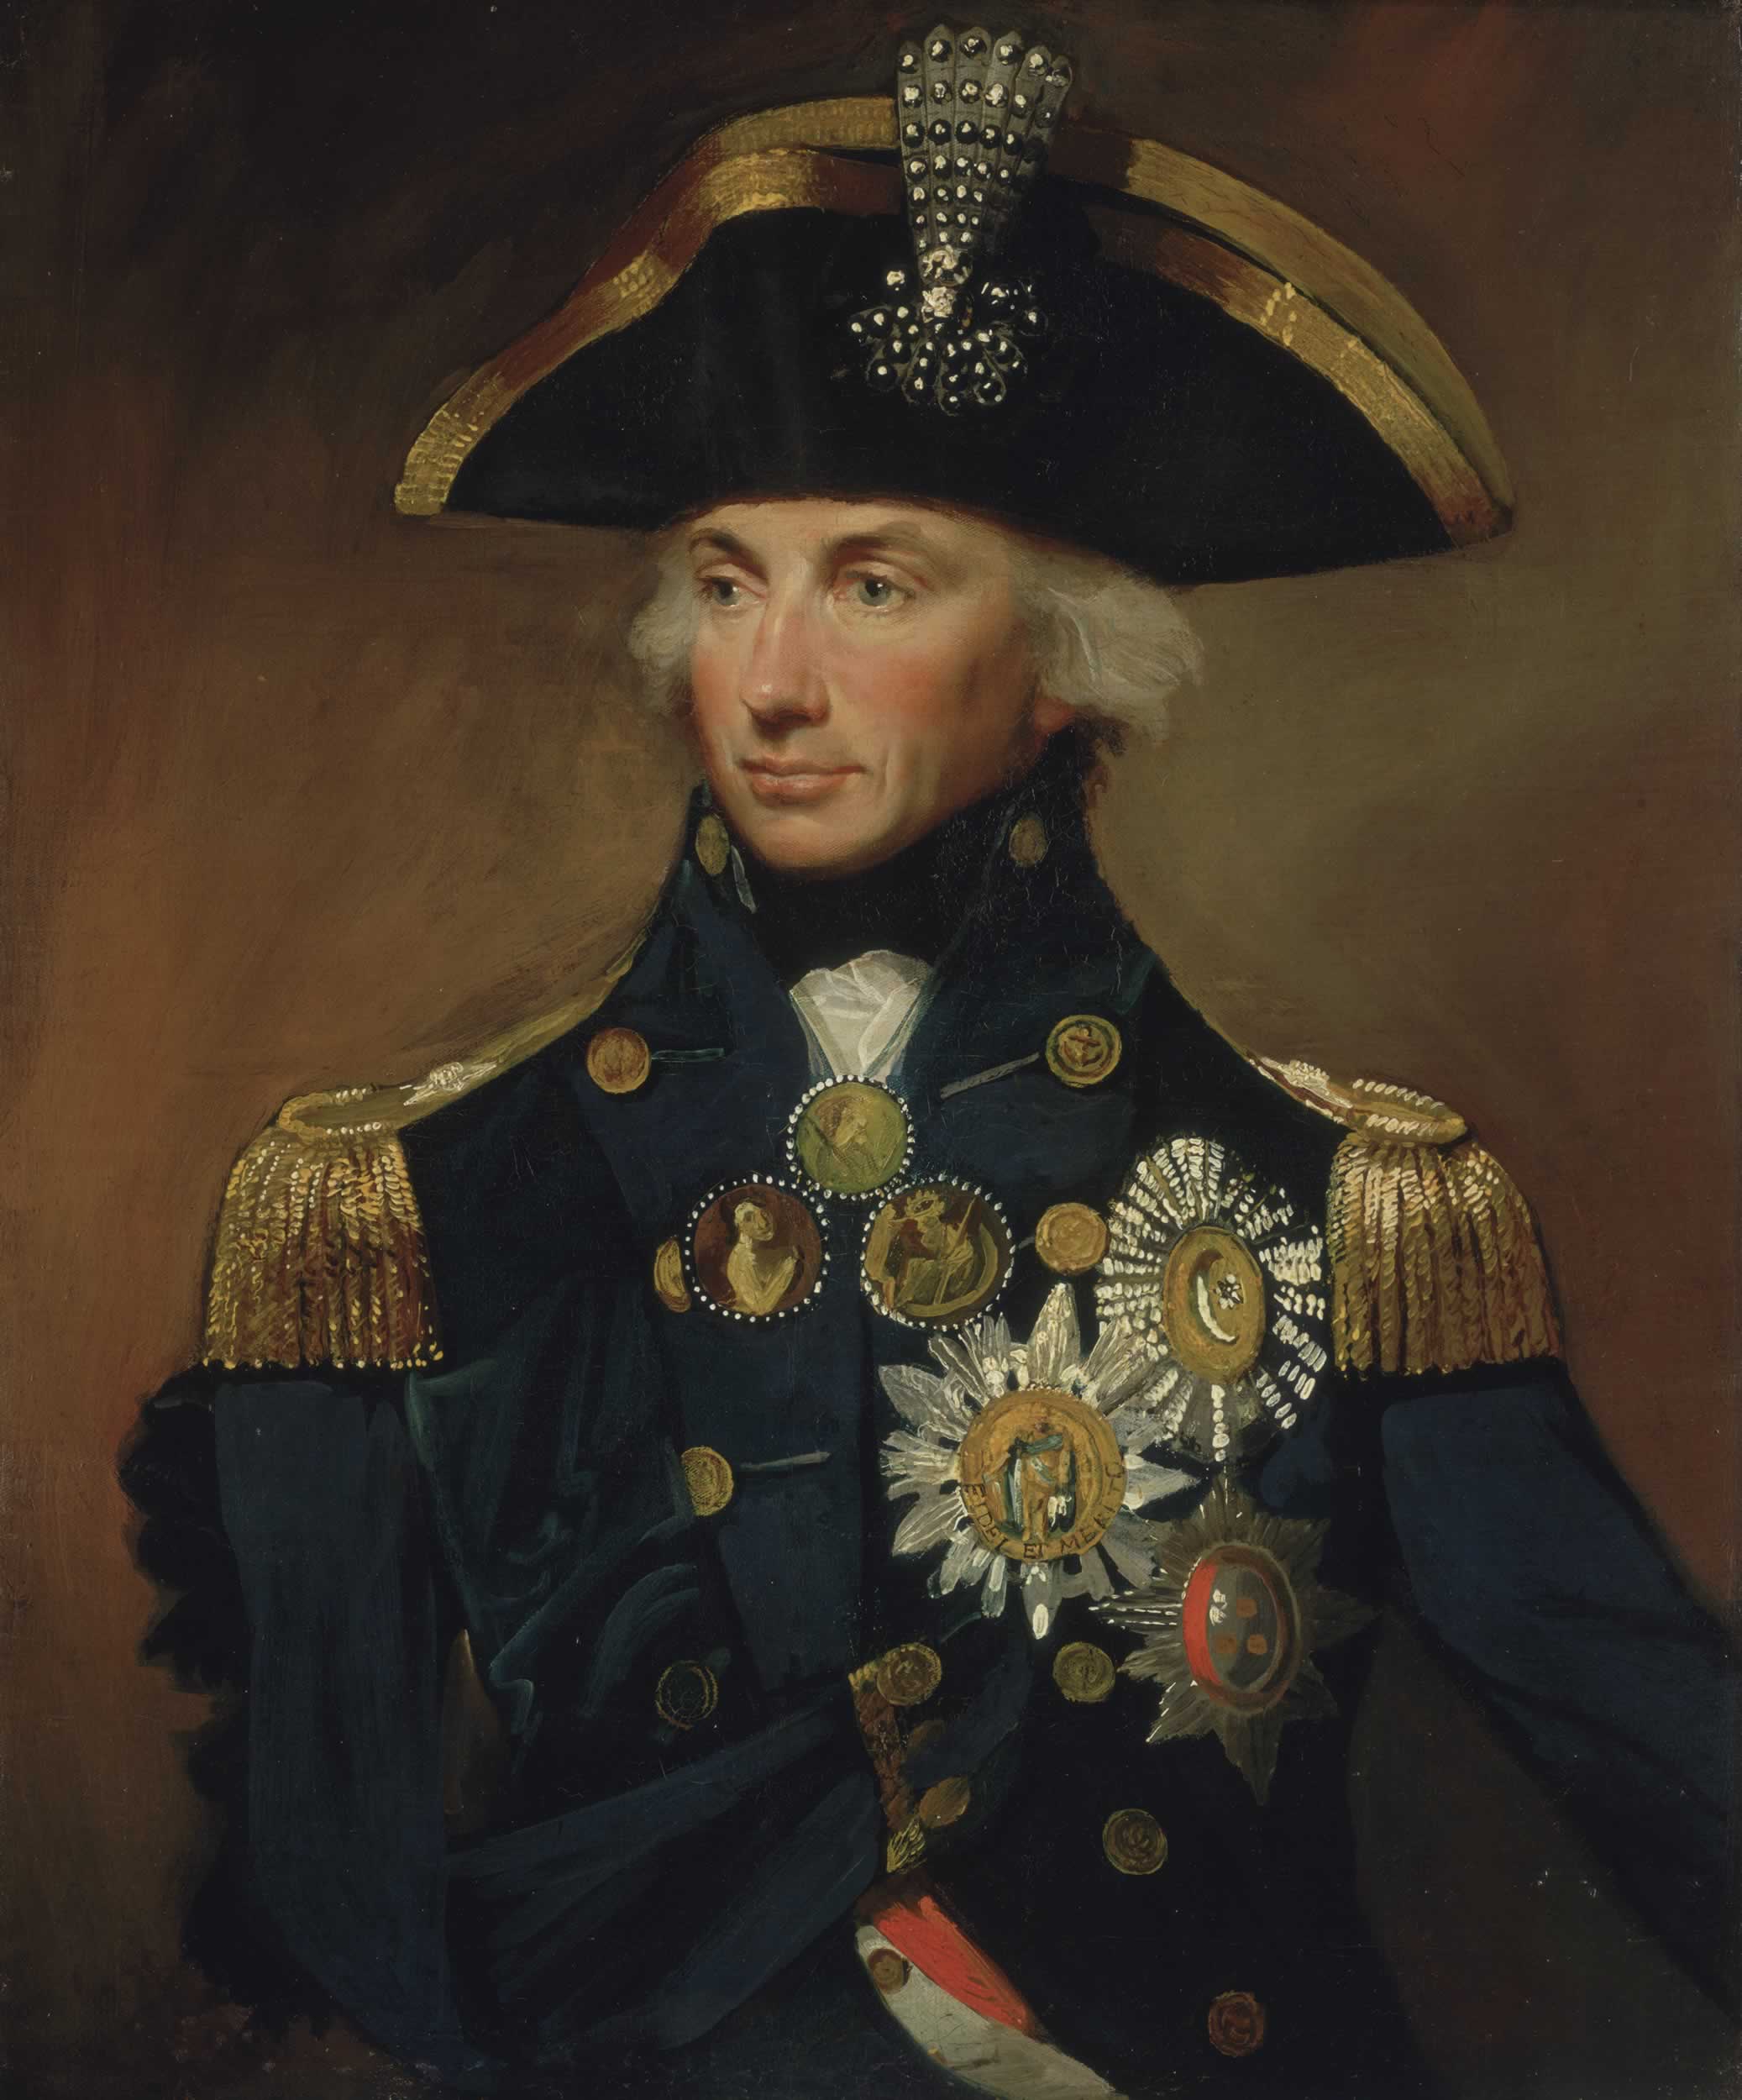 КАЛЕНДАР. 21.10.1805 г. Адмирал Нелсън разгромява край Трафалгар флотата на Наполеон